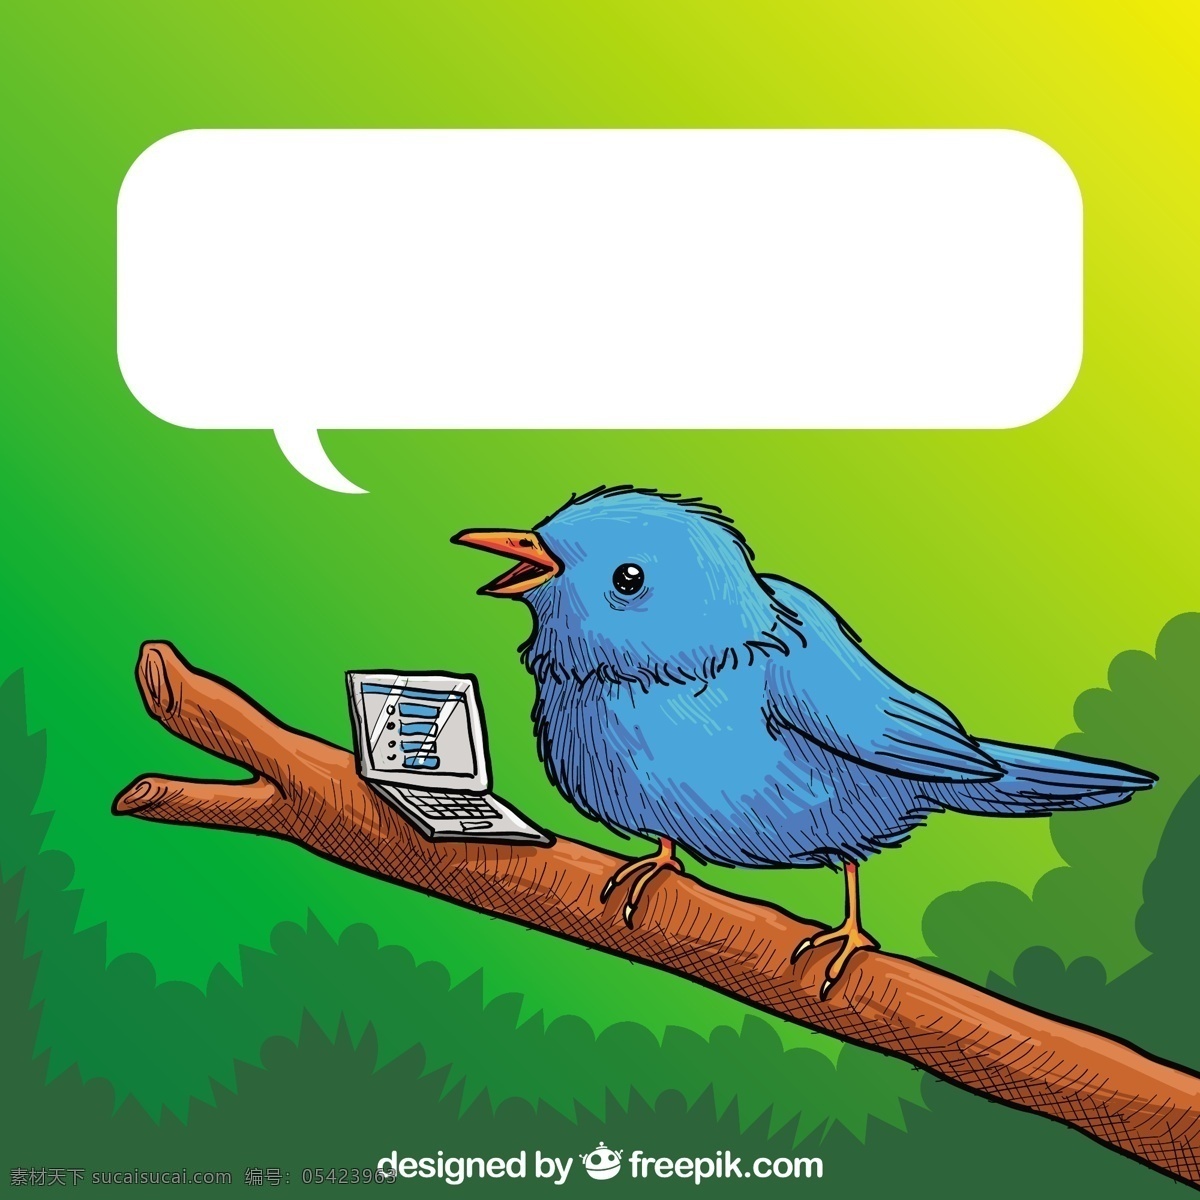 手 拉 蓝鸟 笔记本 电脑 一方面 社交媒体 鸟 动物 社会 蓝 手绘 网络 绘画 媒体 社交网络 计算机网络 画 写生 绿色